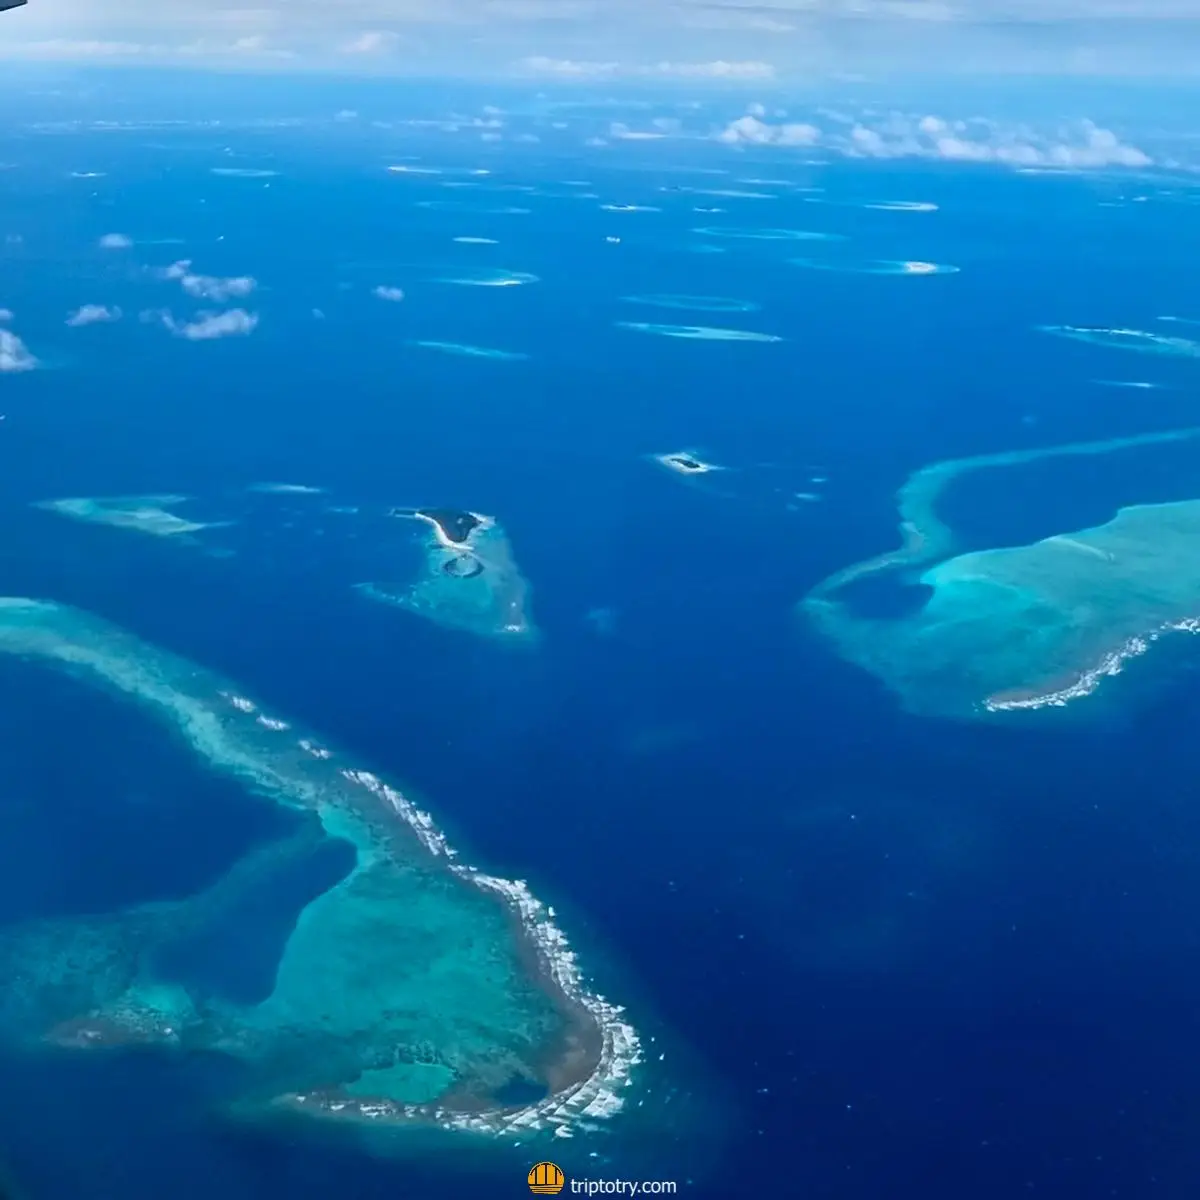 Viaggio alle Maldive fai da te - vista dall'alto sugli atolli delle Maldive - Maldives diy travel